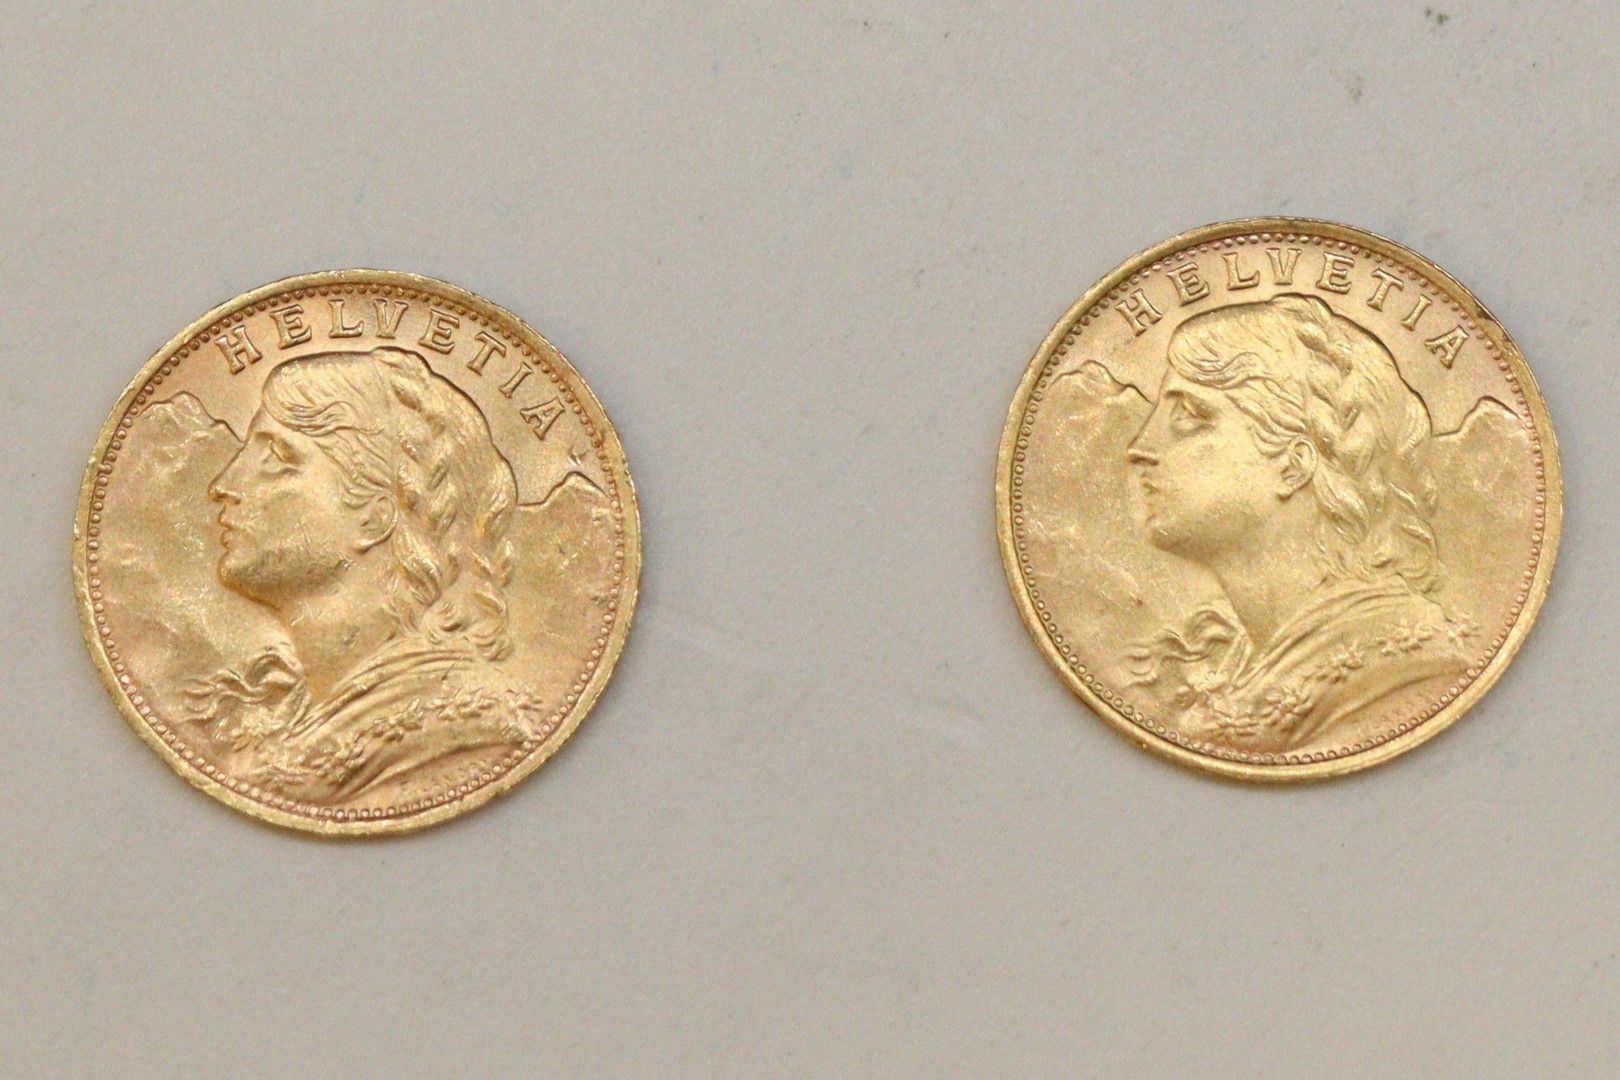 Null Lote de dos monedas de oro de 20 francos Vreneli (1935 LB)

SUP. 

Peso : 1&hellip;